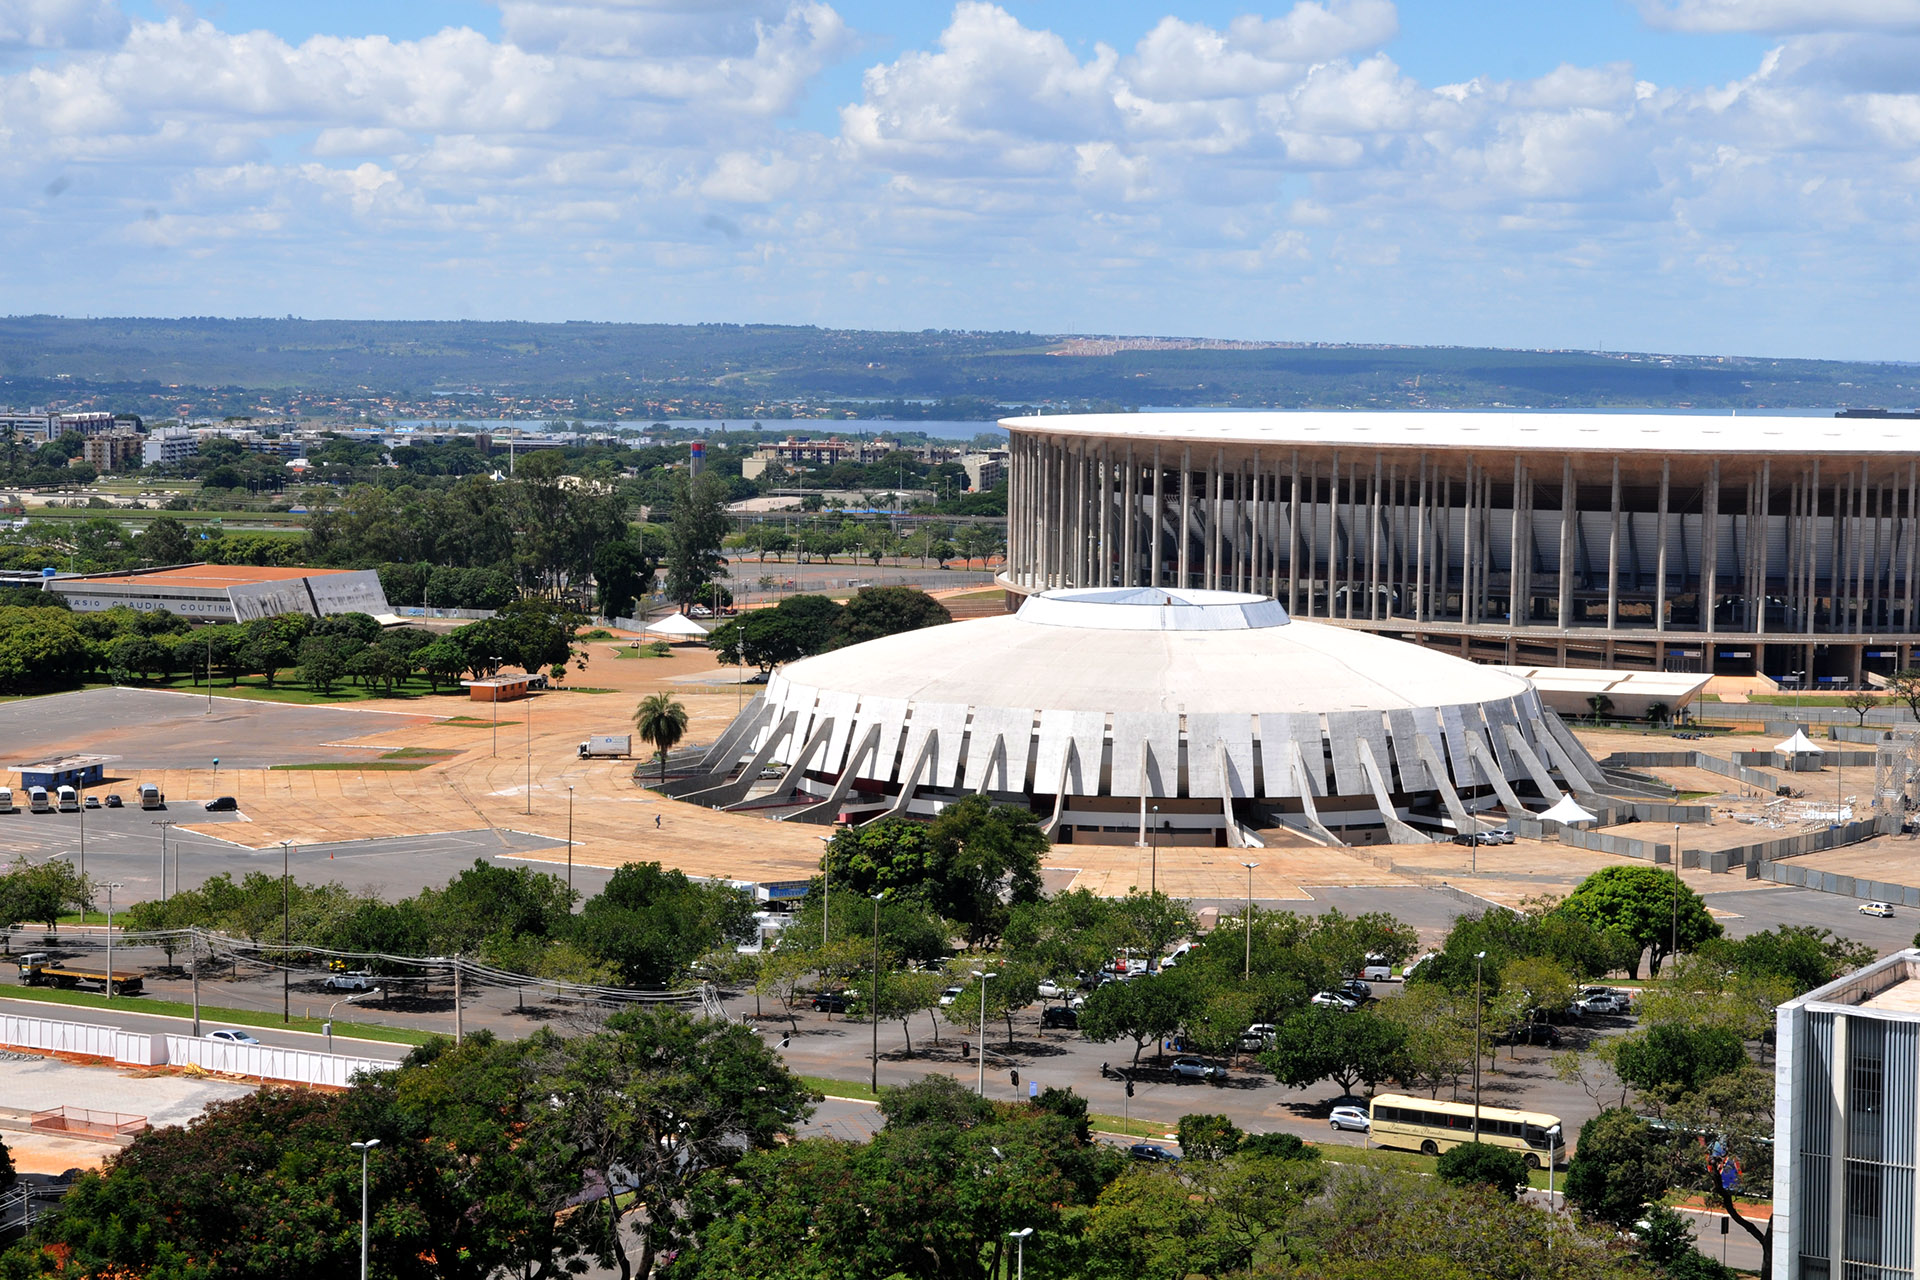 Concessão do Centro Esportivo de Brasília vai durar 35 anos, com investimento de R$ 387 milhões na área. Abertura dos envelopes ocorre em 8 de fevereiro.